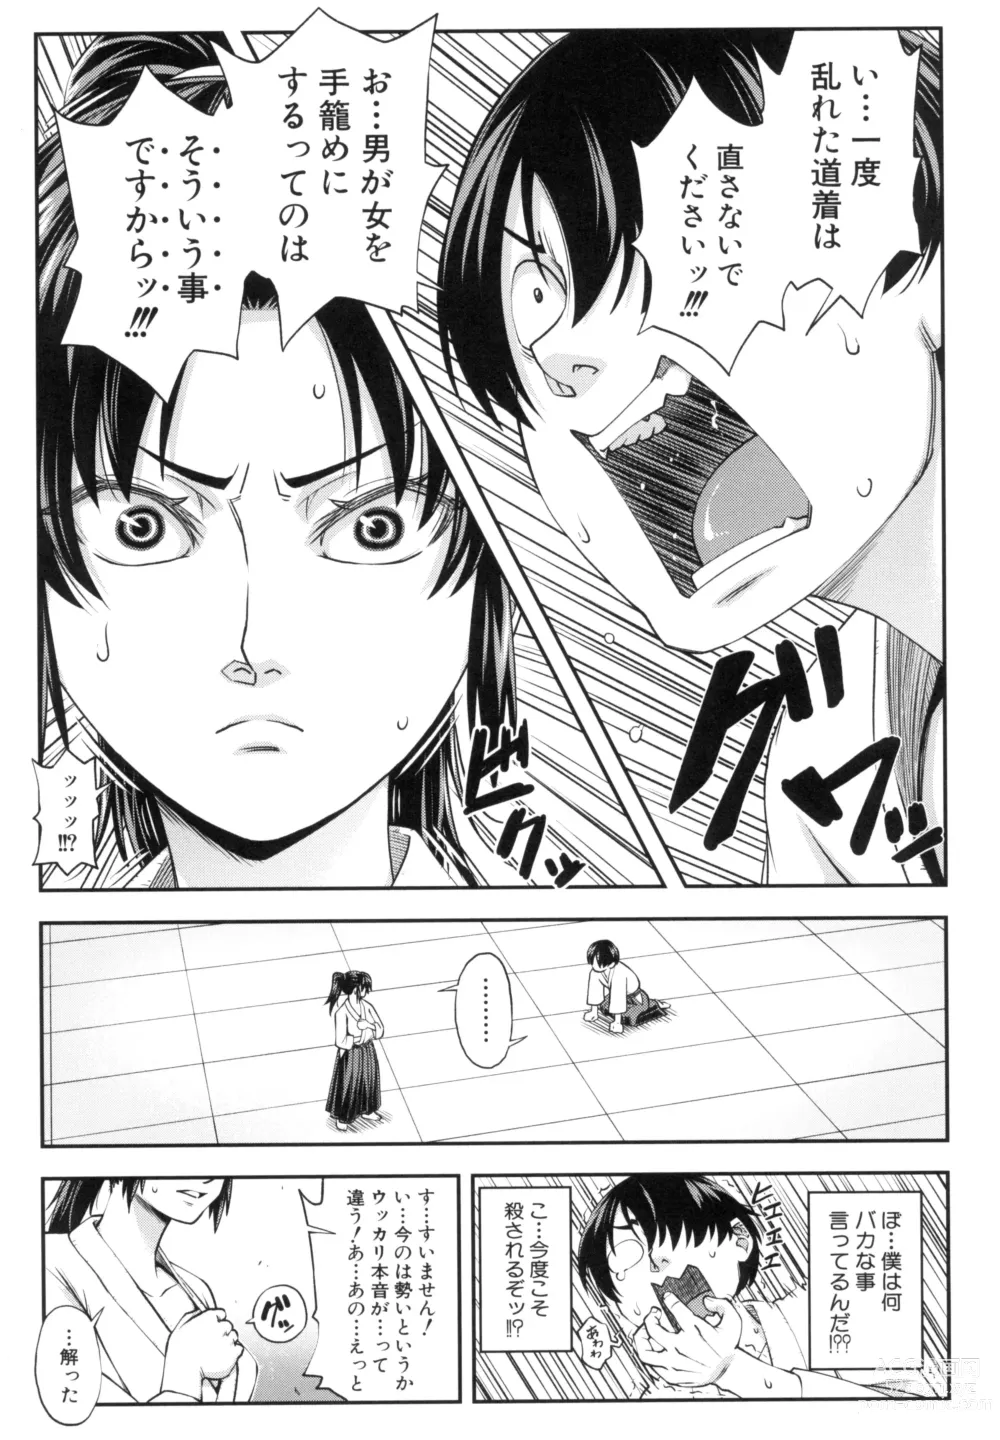 Page 17 of manga Yareba Yaru Hodo Suki ni Naru